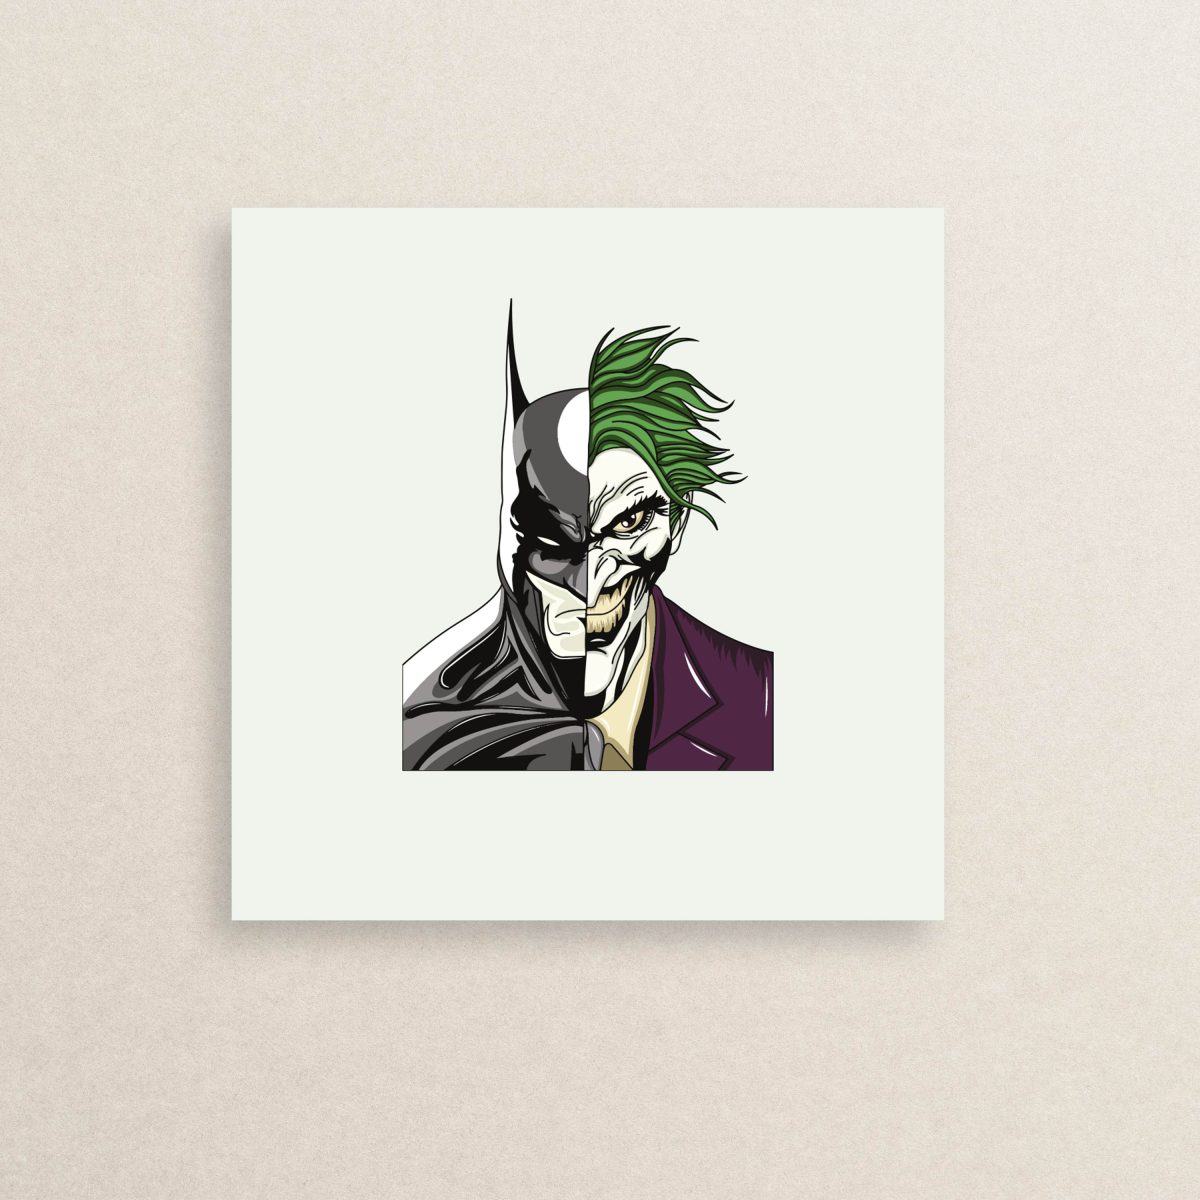 استیکر جوکر و بتمن 01 | Joker and Batman sticker 01